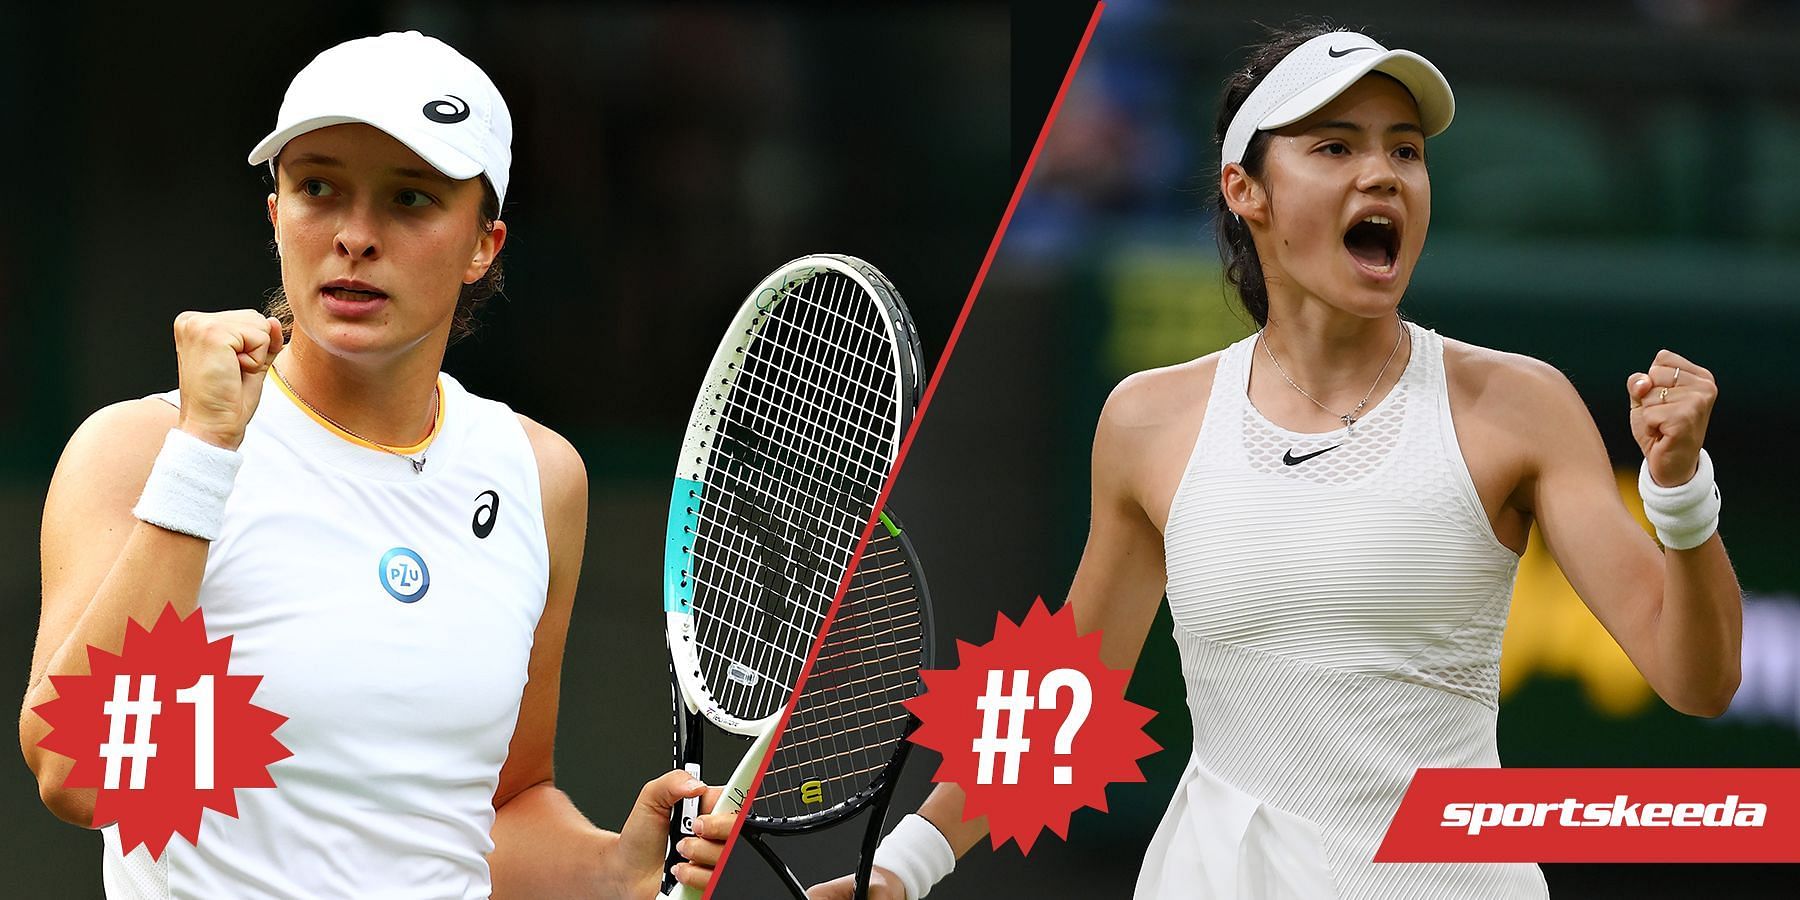 Iga Swiatek and Emma Raducanu are among the Top 10 seeds at Wimbledon